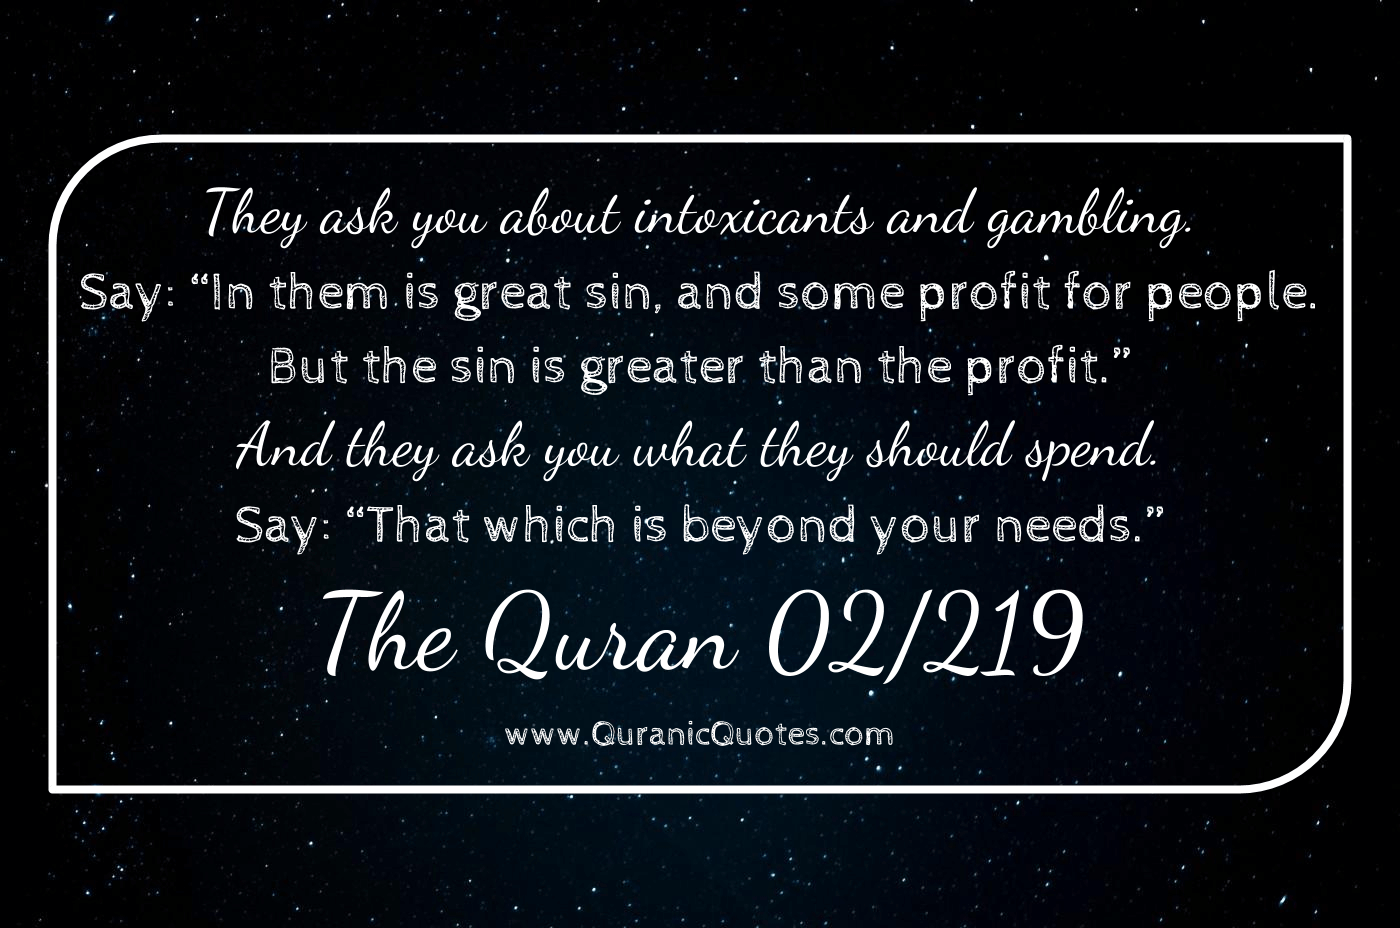 Quranic Quotes #232